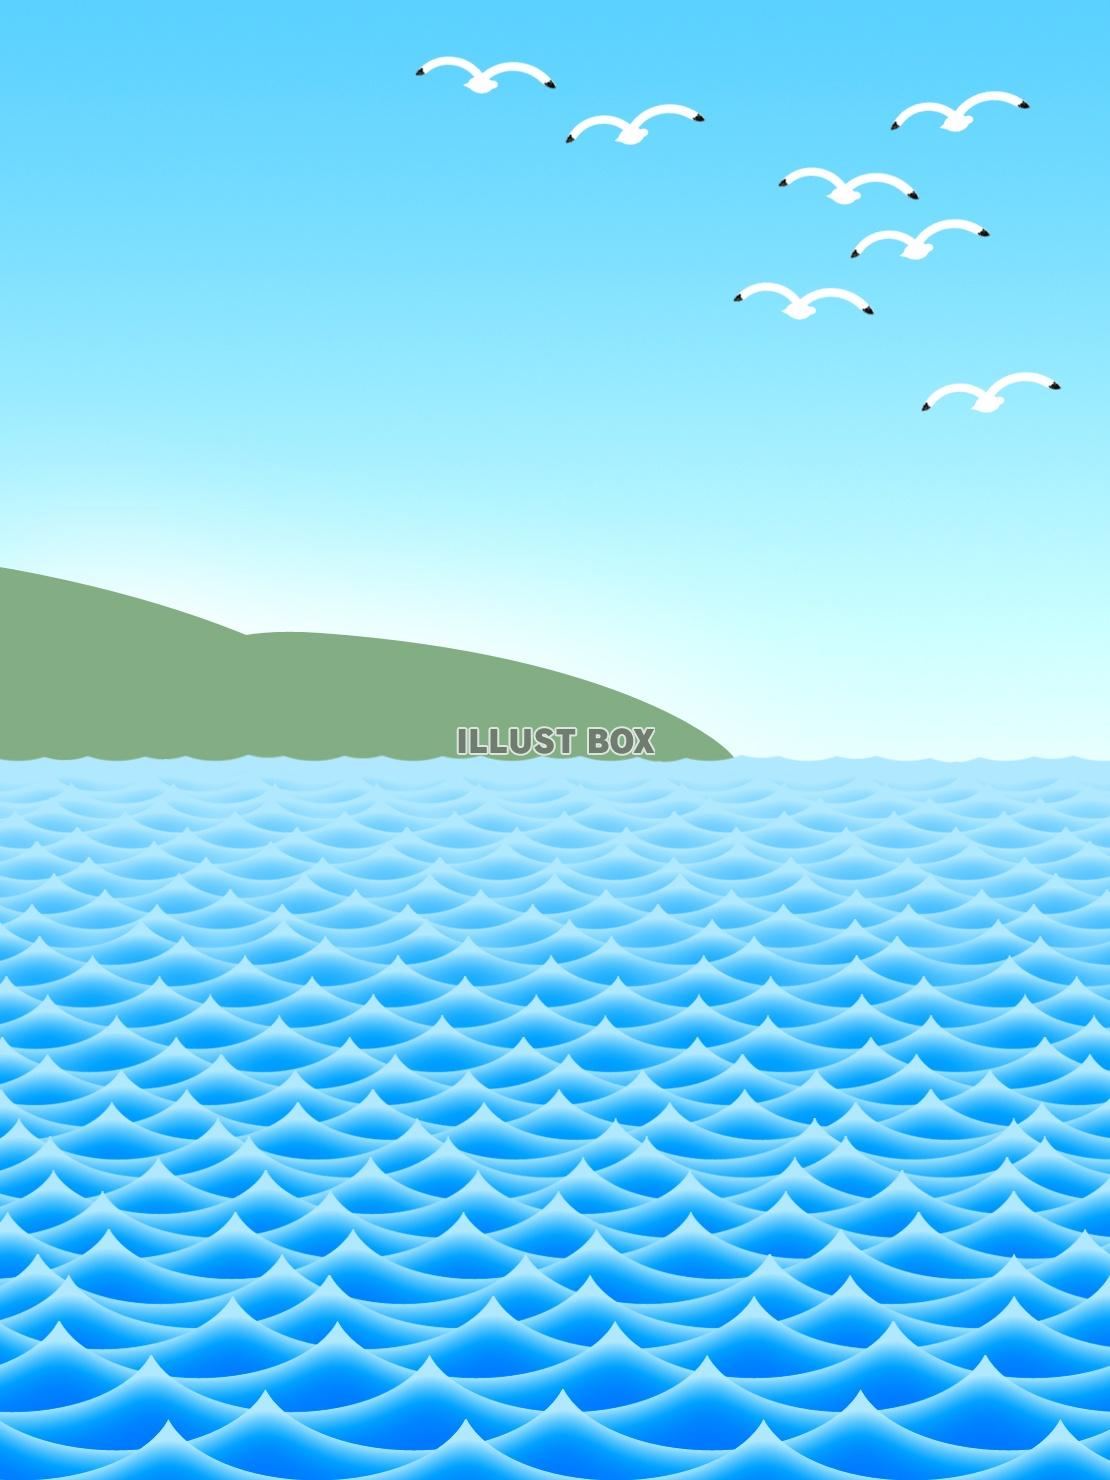 無料イラスト 海面の壁紙画像 波の風景背景素材イラスト